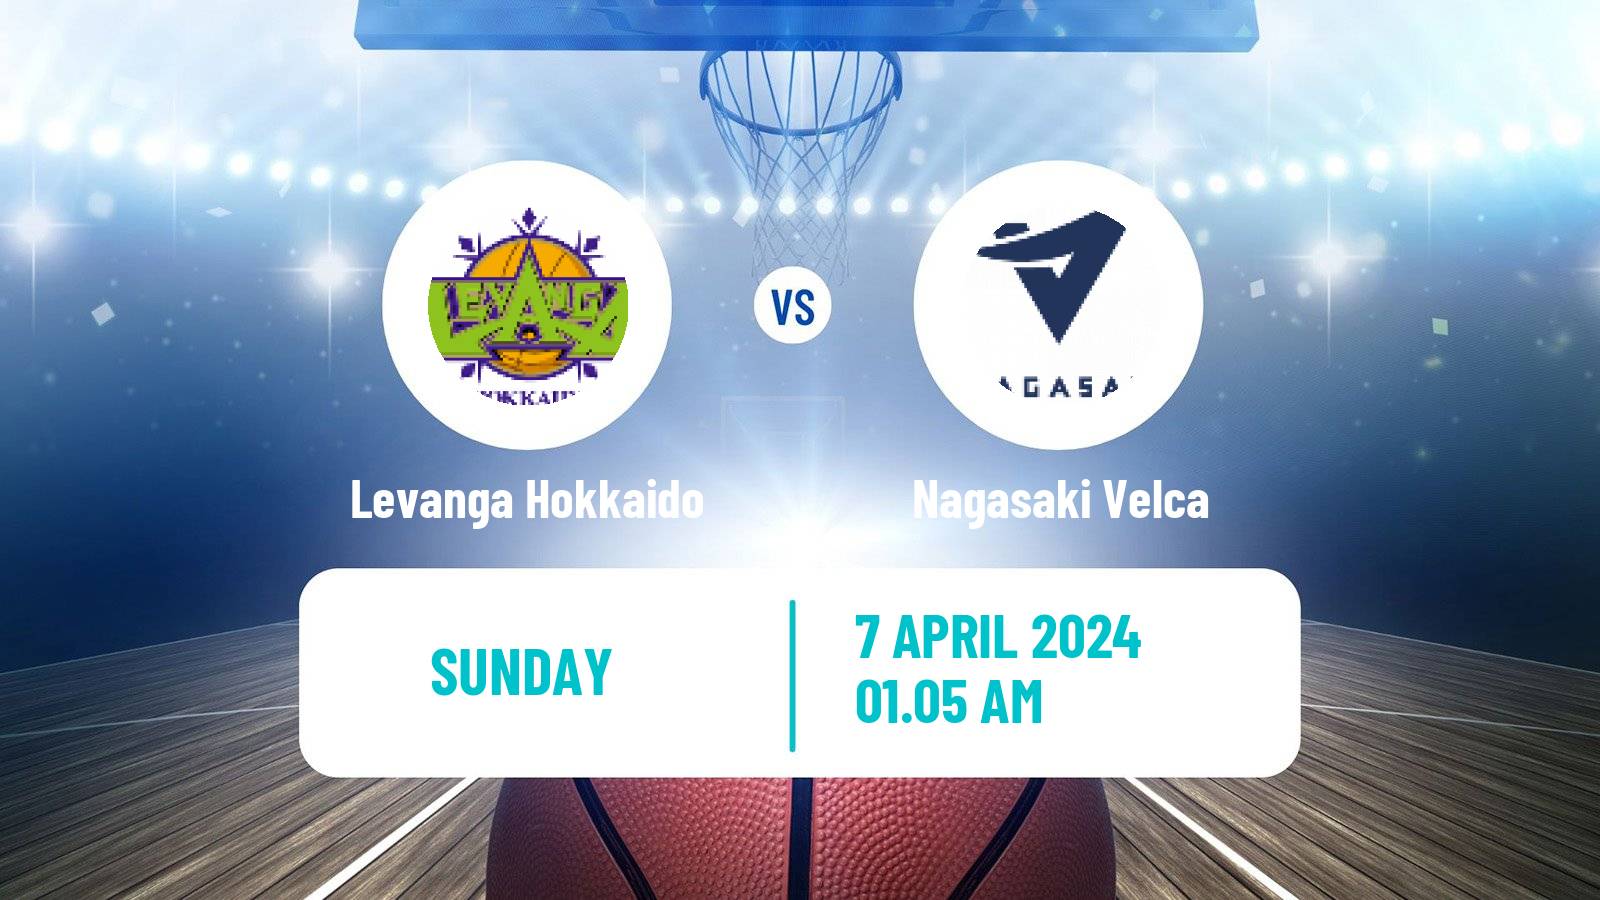 Basketball BJ League Levanga Hokkaido - Nagasaki Velca